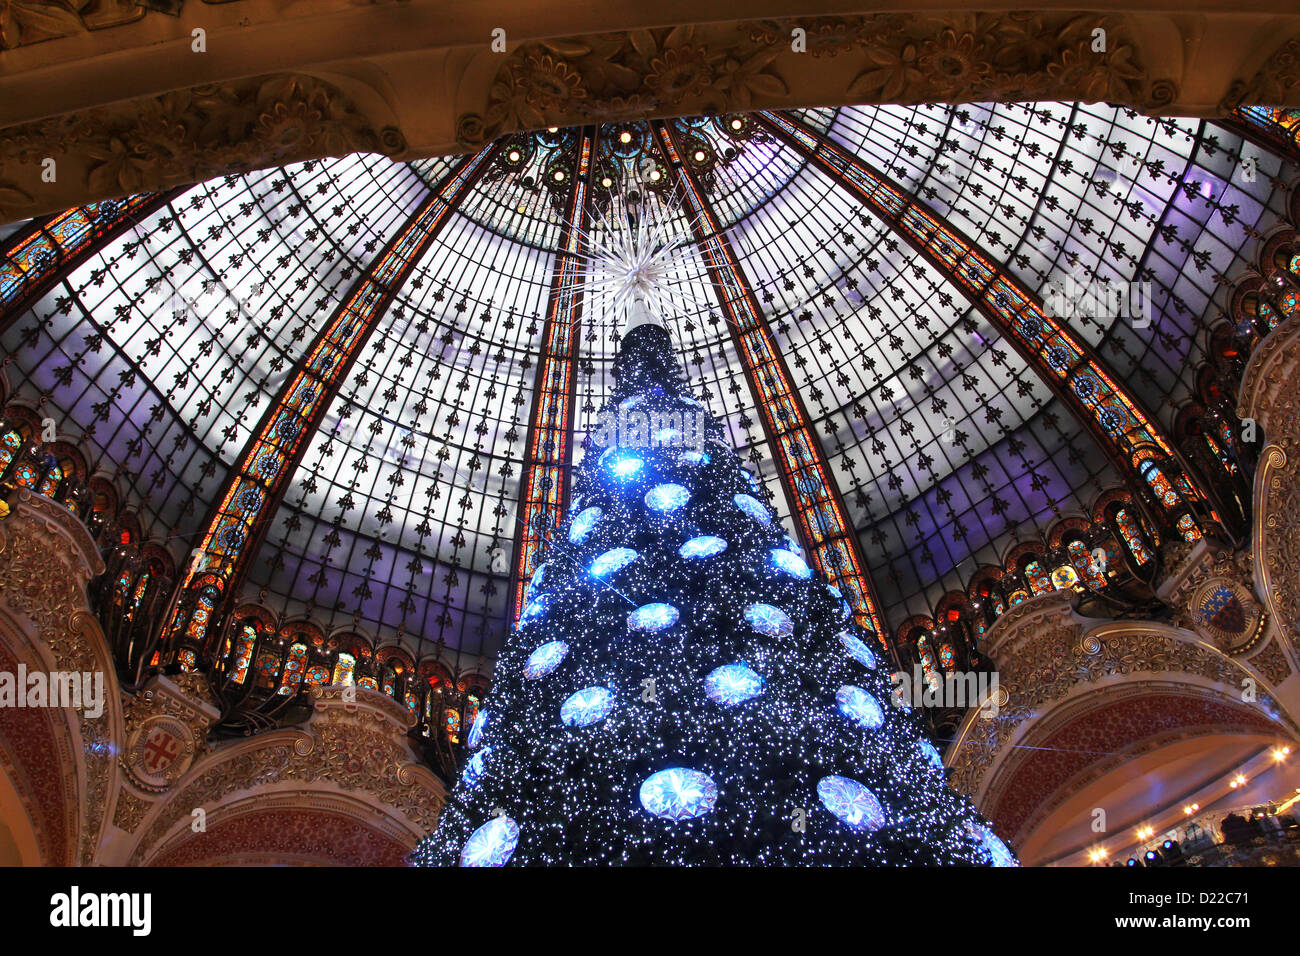 L'arbre de Noël dans des Galeries Lafayette, des pavillons avec parfum, le 08 novembre 2012, Paris, France. Banque D'Images